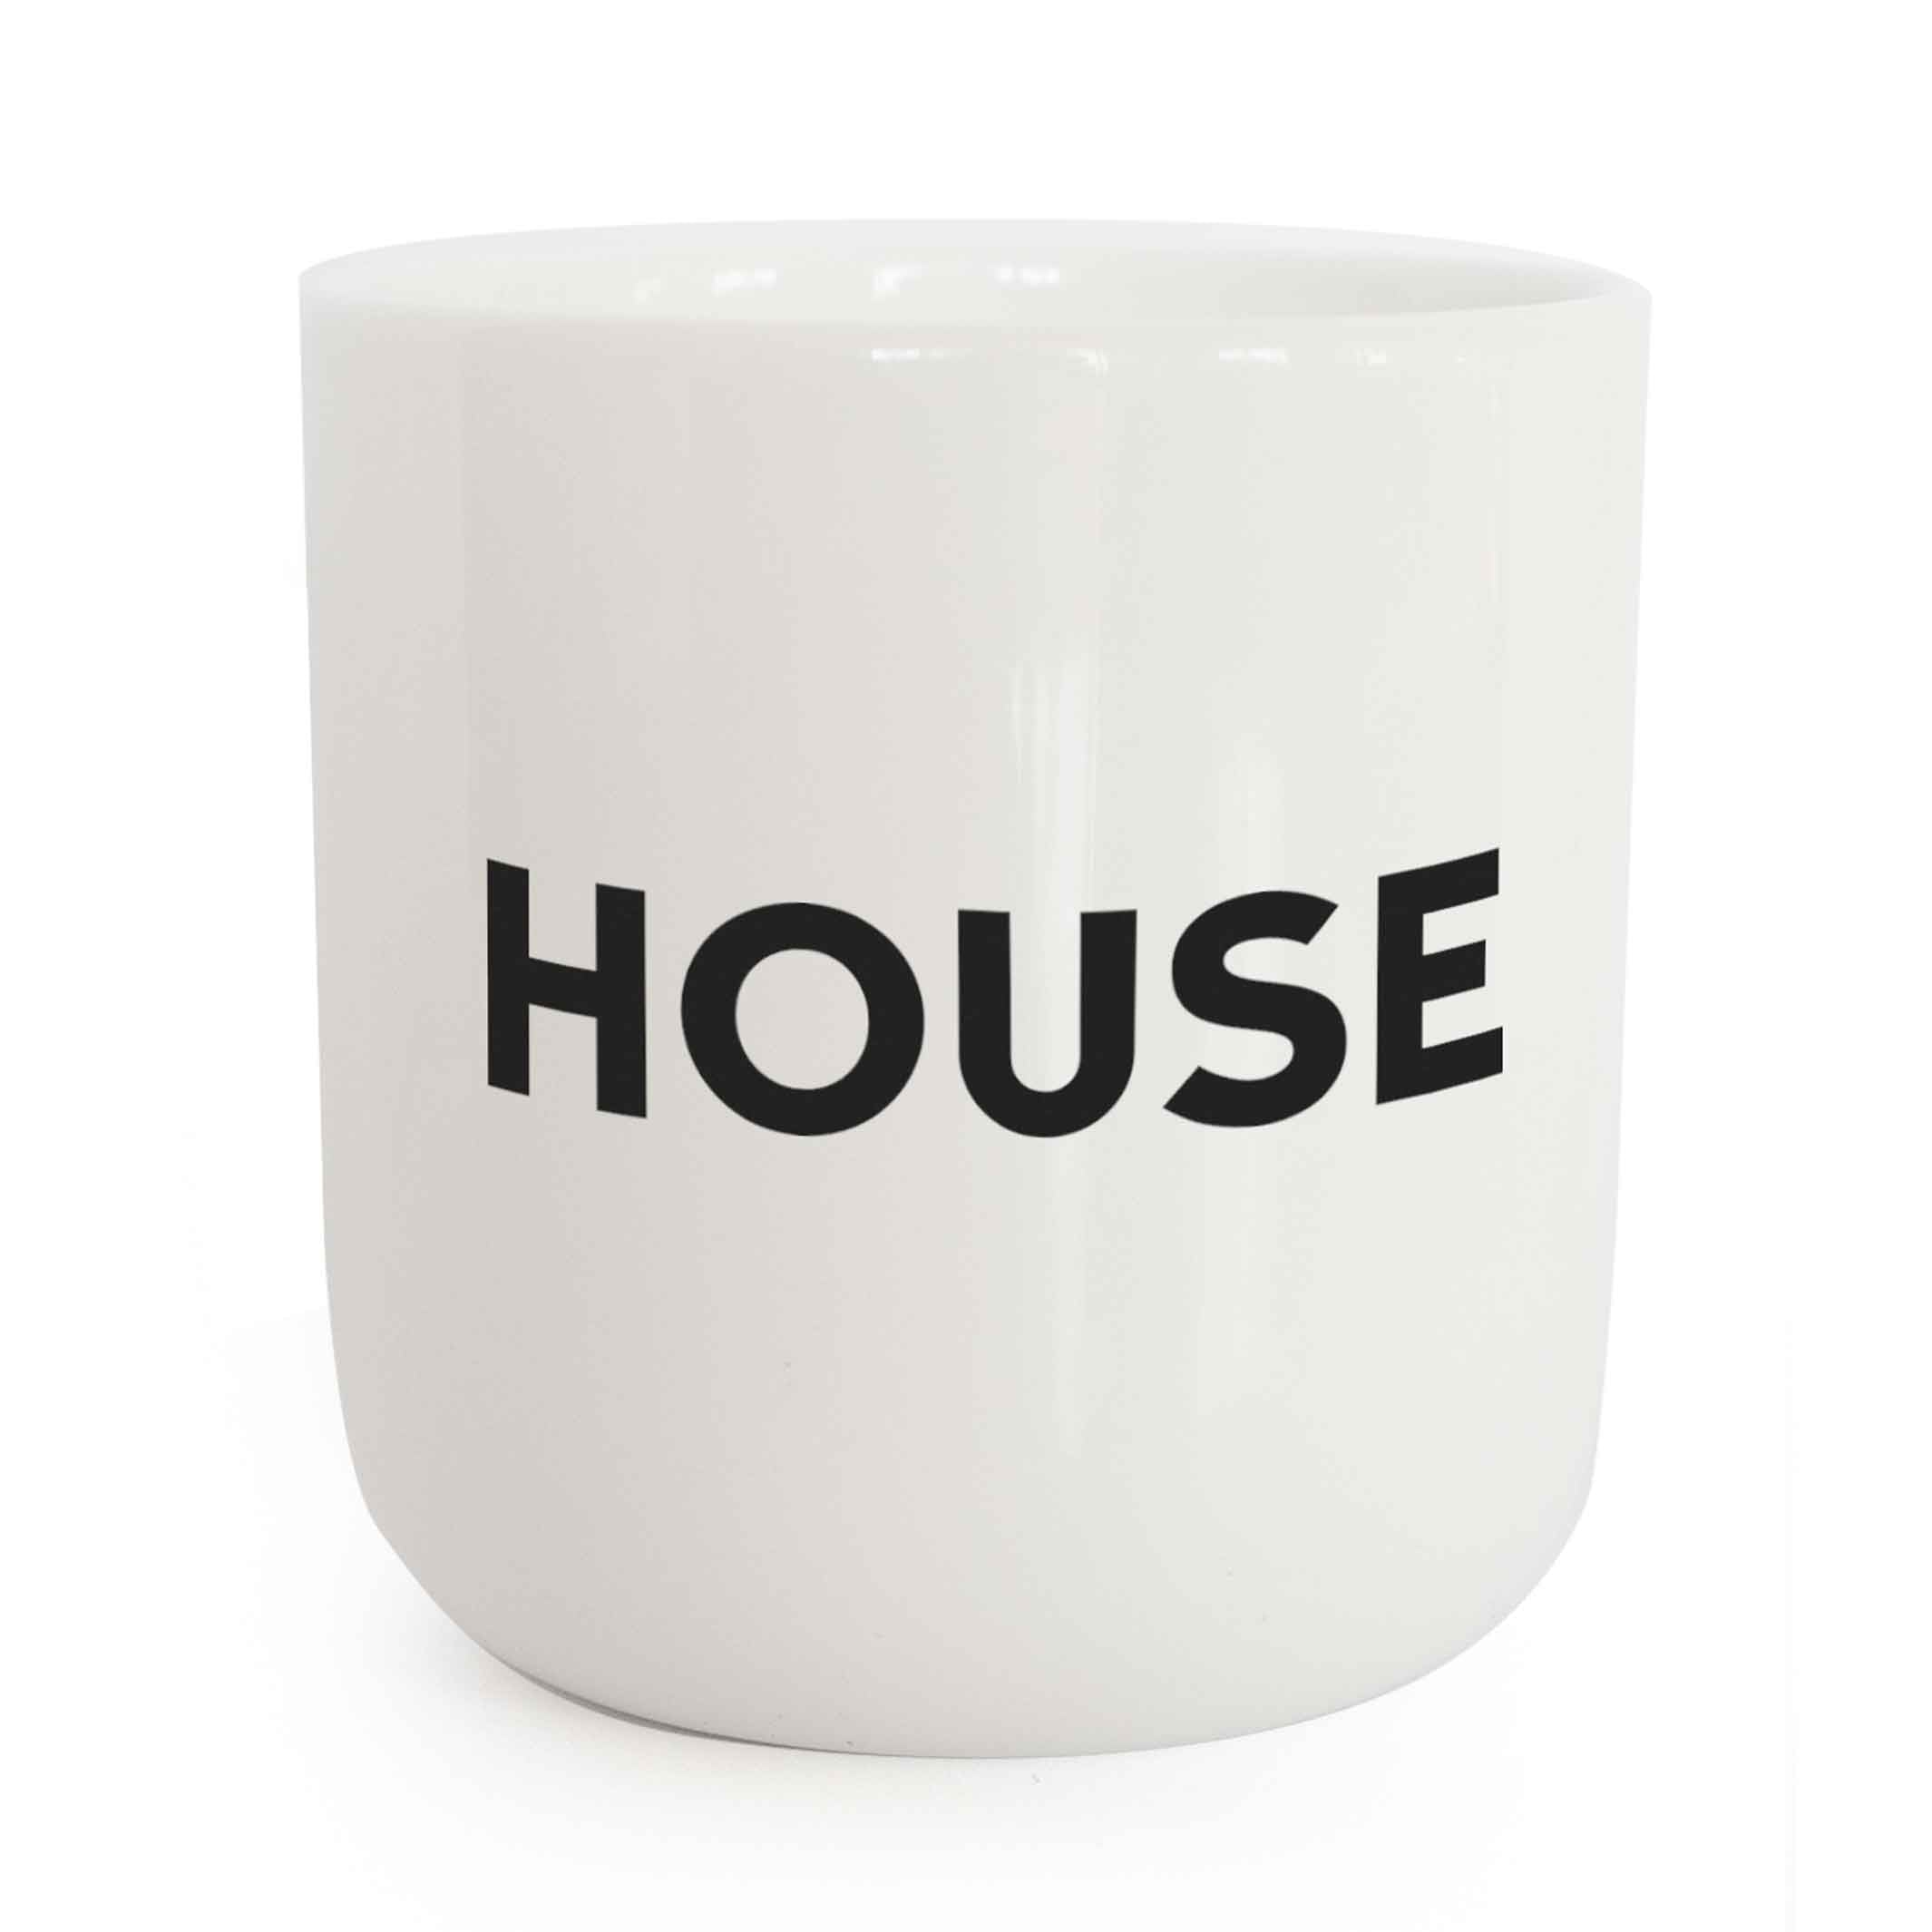 HOUSE | weisser Kaffee- & Tee-BECHER mit schwarzer Typo | Beat Serie | PLTY